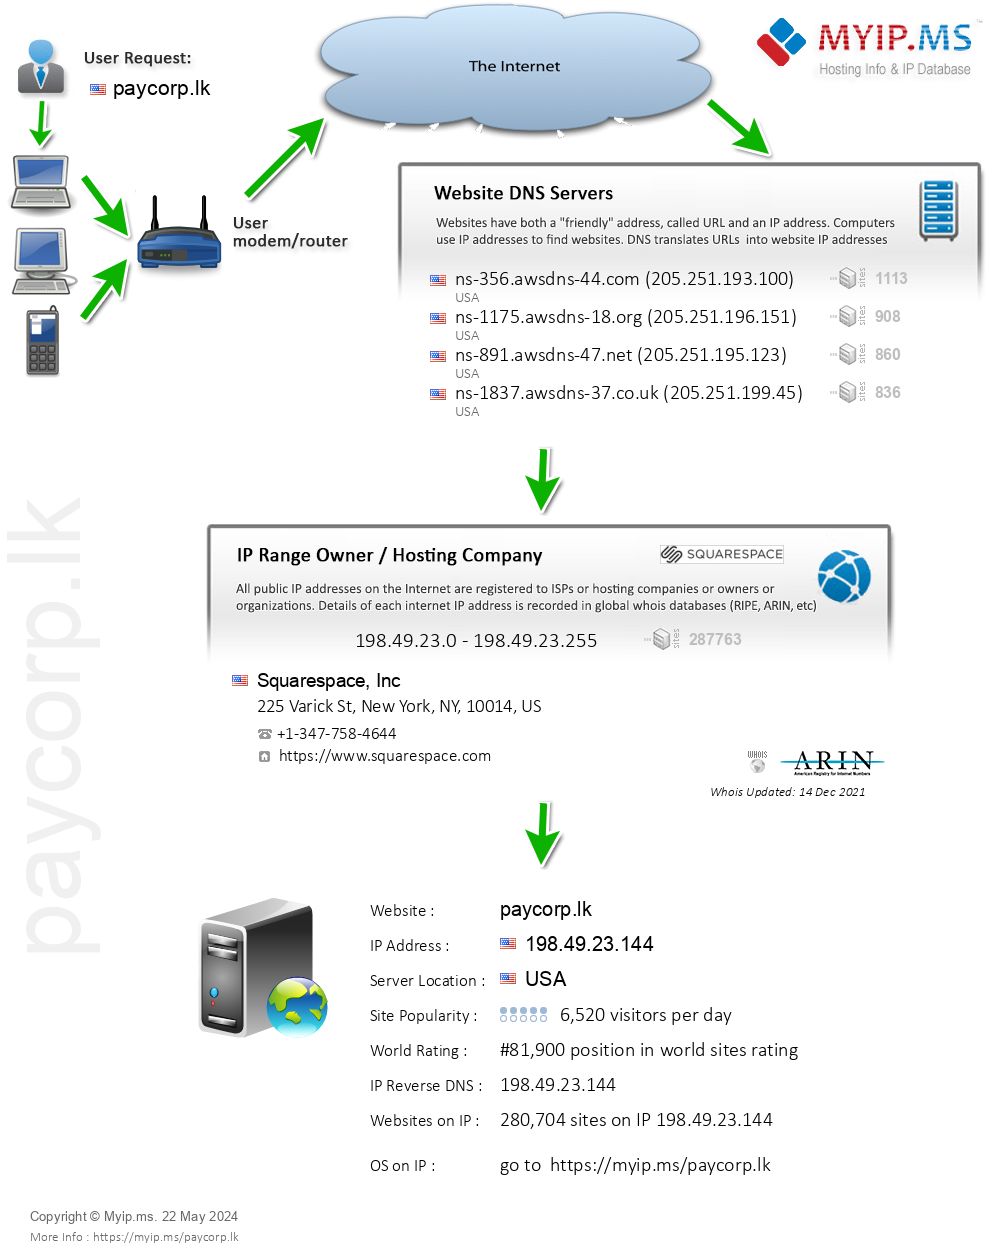 Paycorp.lk - Website Hosting Visual IP Diagram